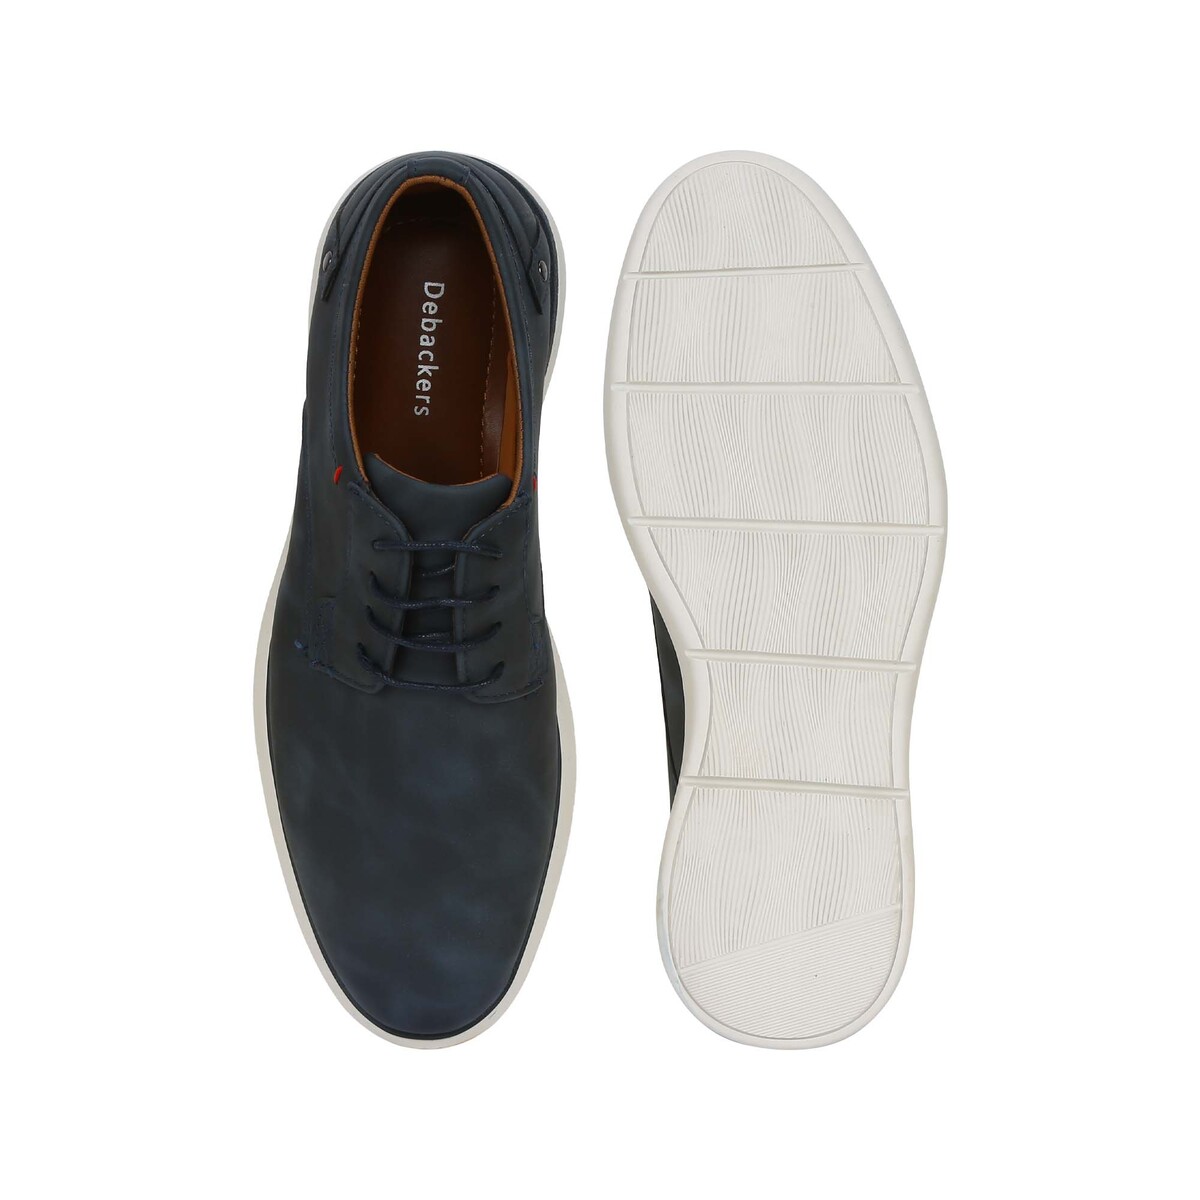 Debackers Men's Casual Shoe 9627-32 Navy, 43 Online at Best Price ...